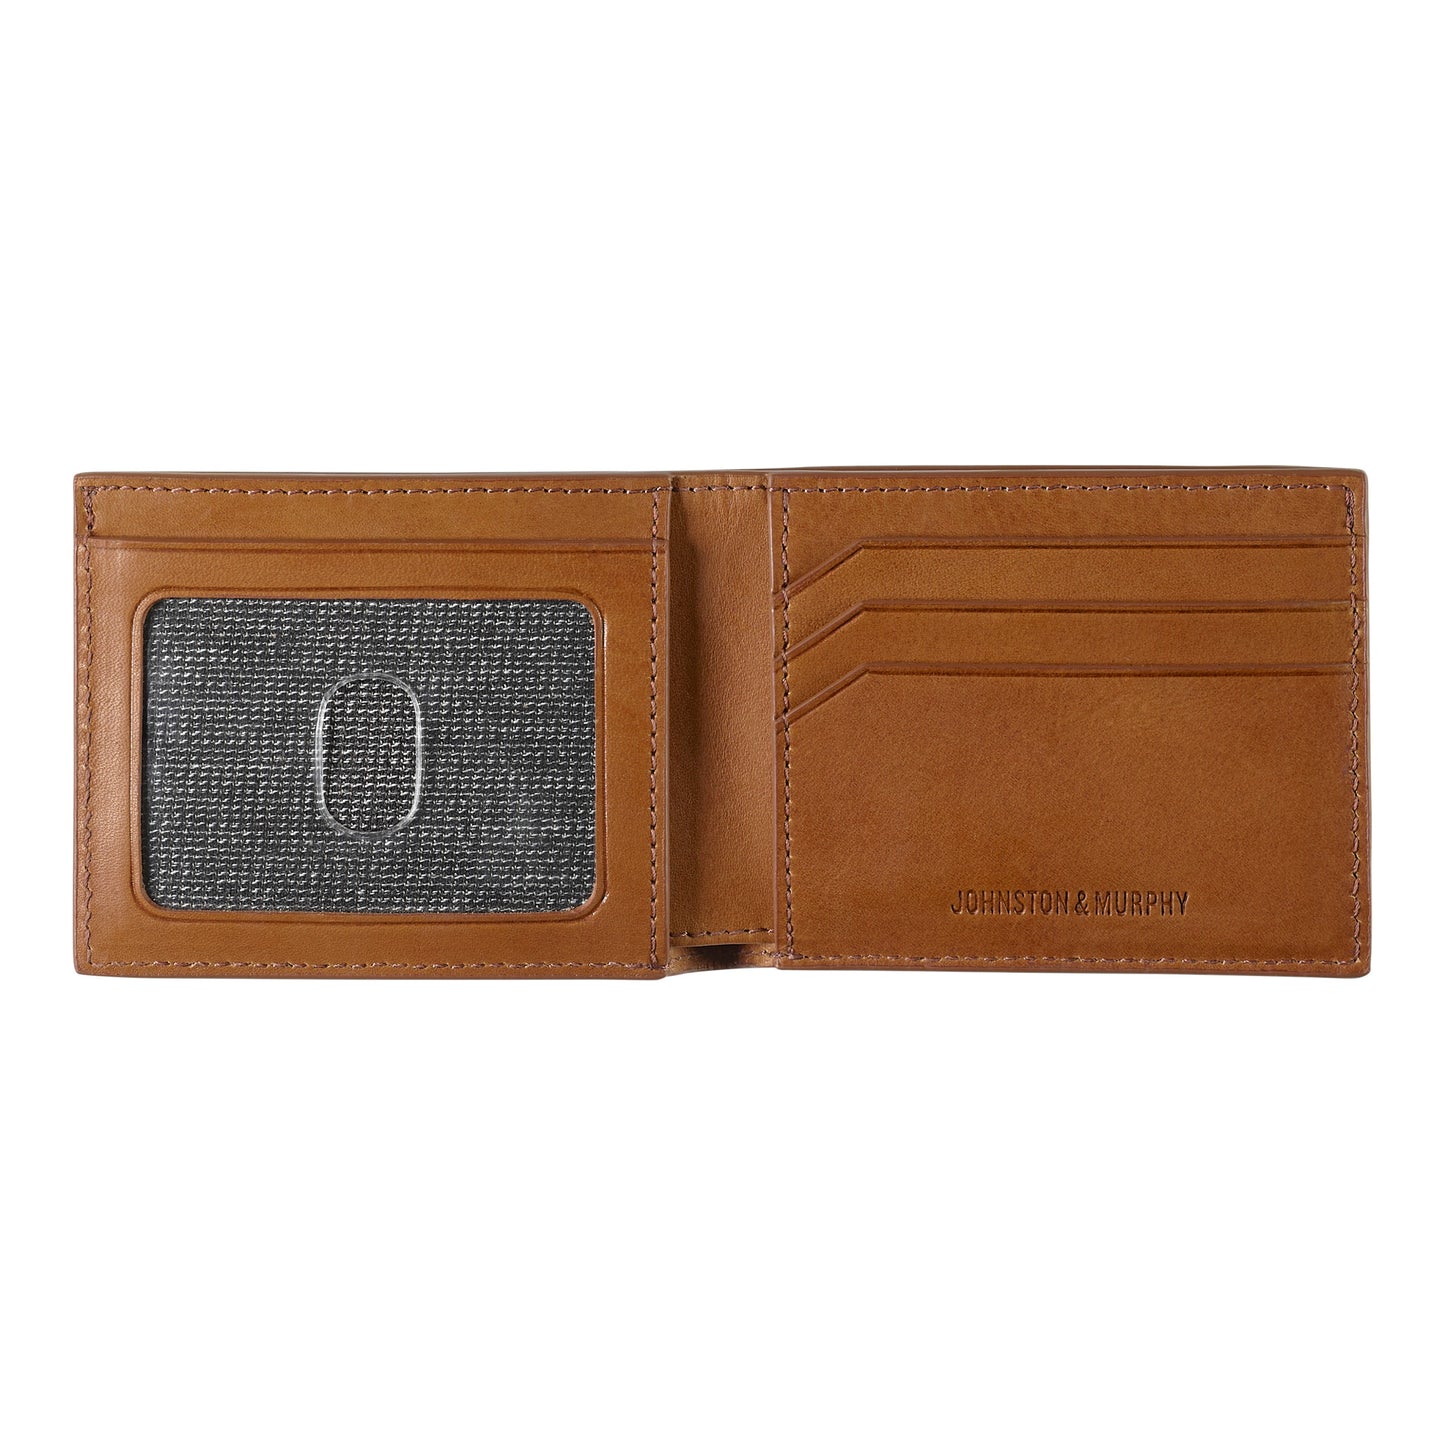 Johnston & Murphy Rhodes Billfold Wallet in Tan Full Grain Leather